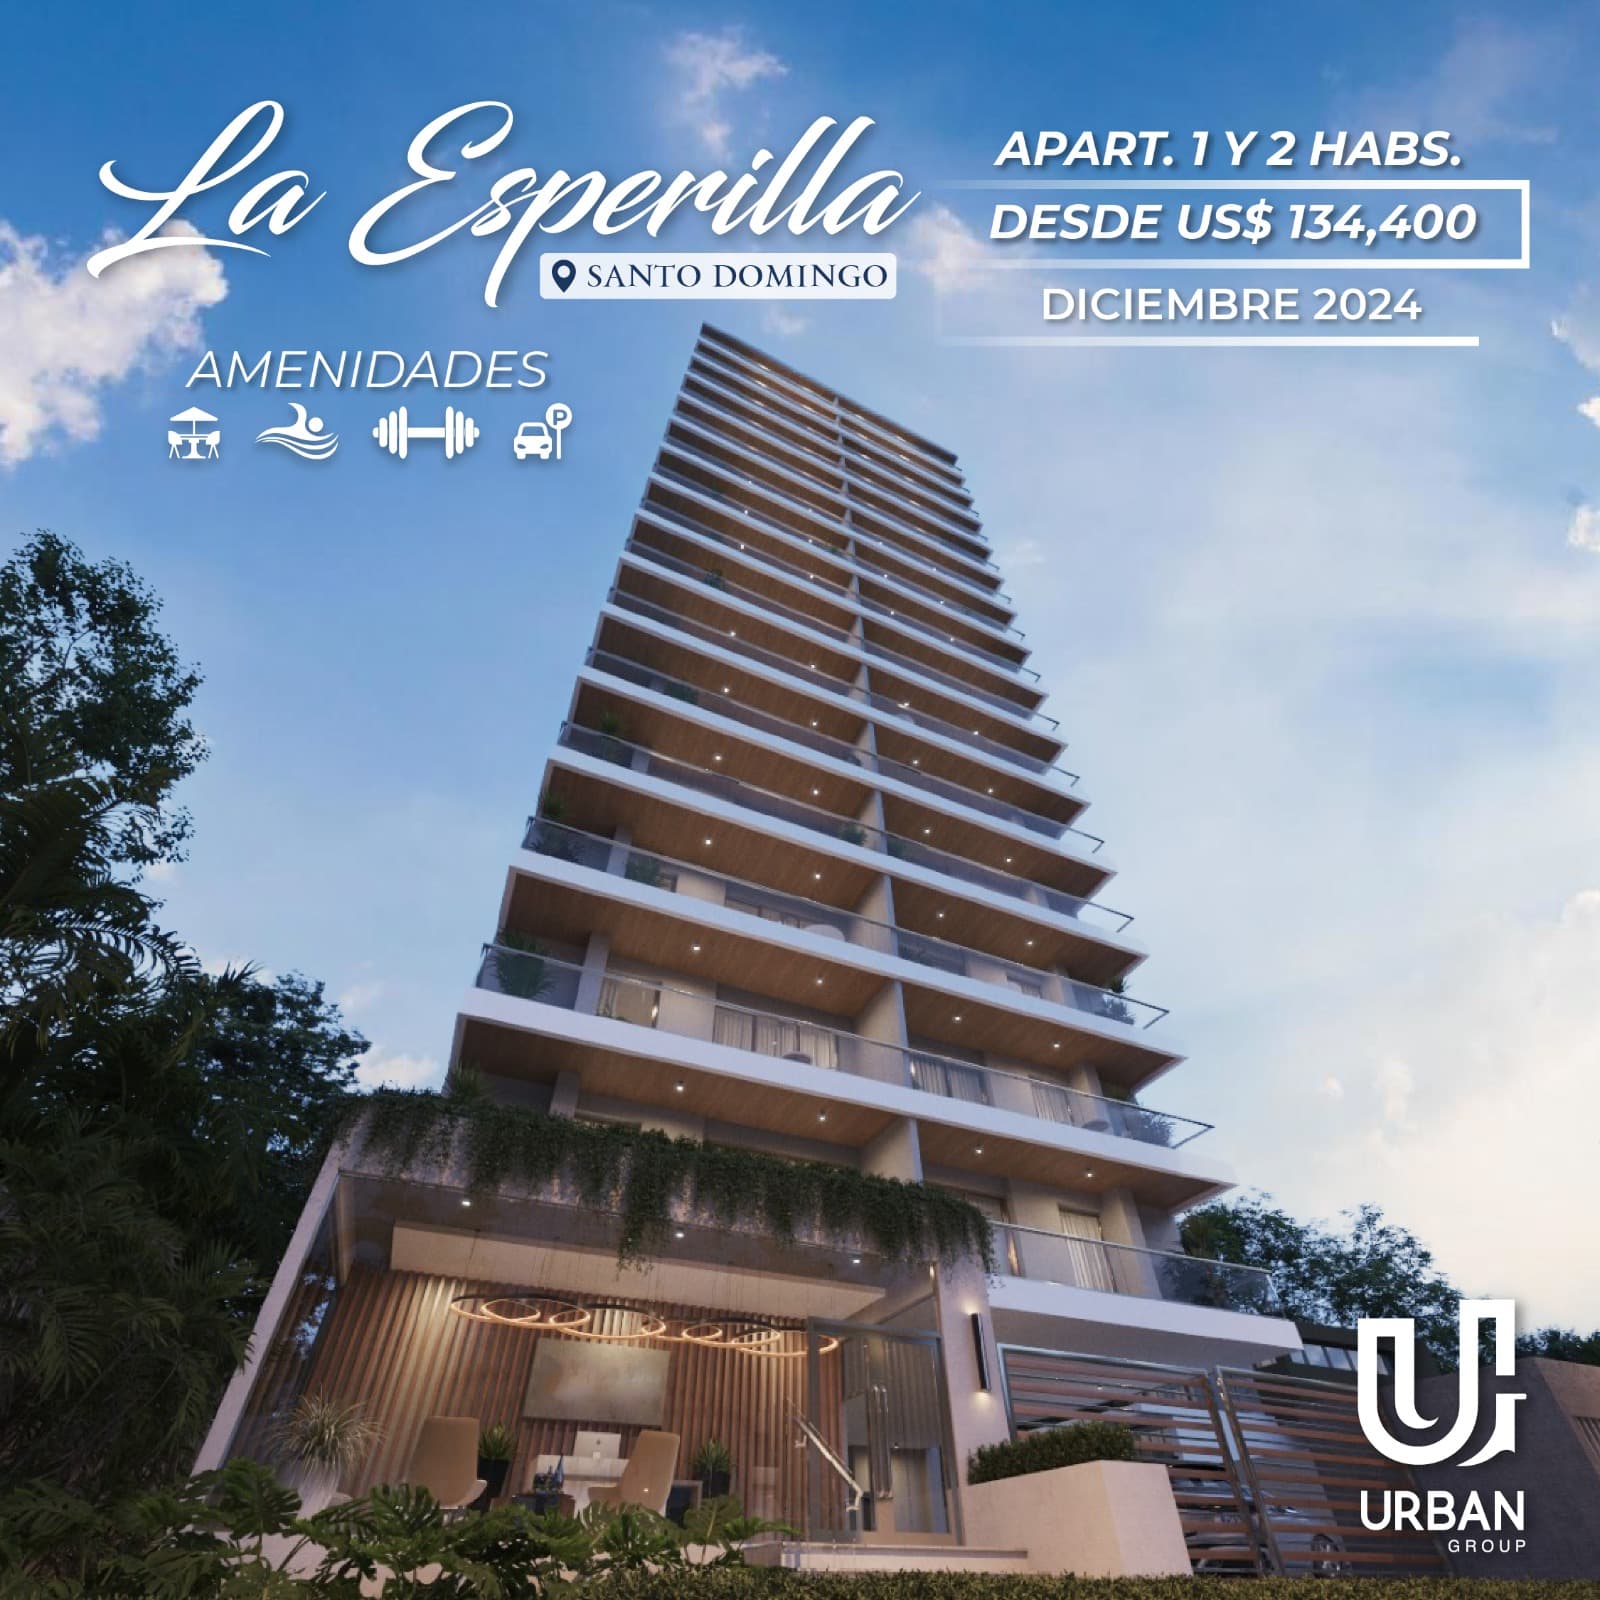 Apartamentos de 1 y 2 Habitaciones desde US$134,400 En La Esperilla